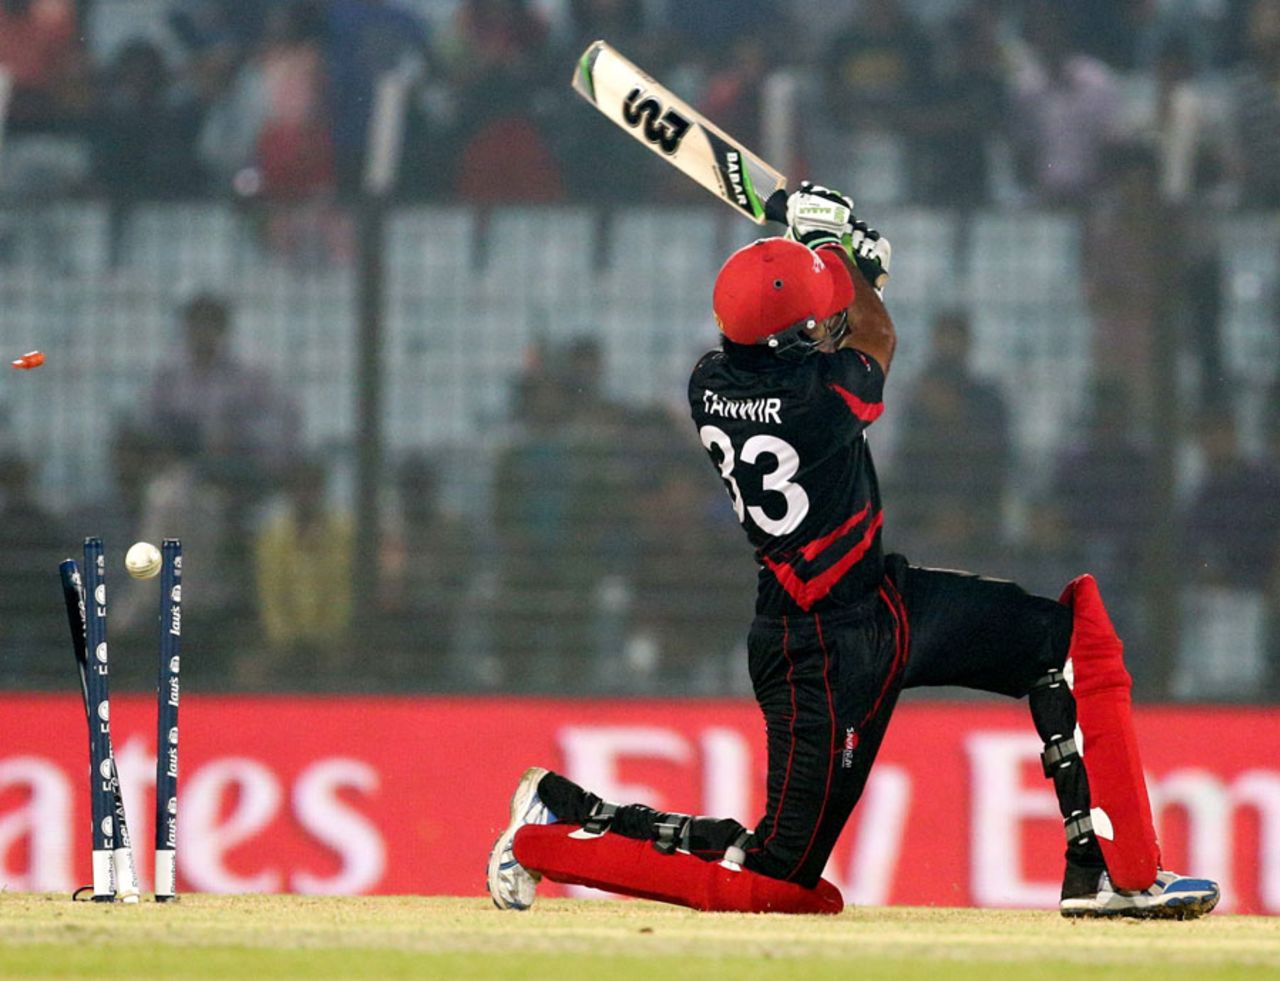 Tanwir Afzal was bowled for a duck, Bangladesh v Hong Kong, World T20, Group A, Chittagong, March 20, 2014